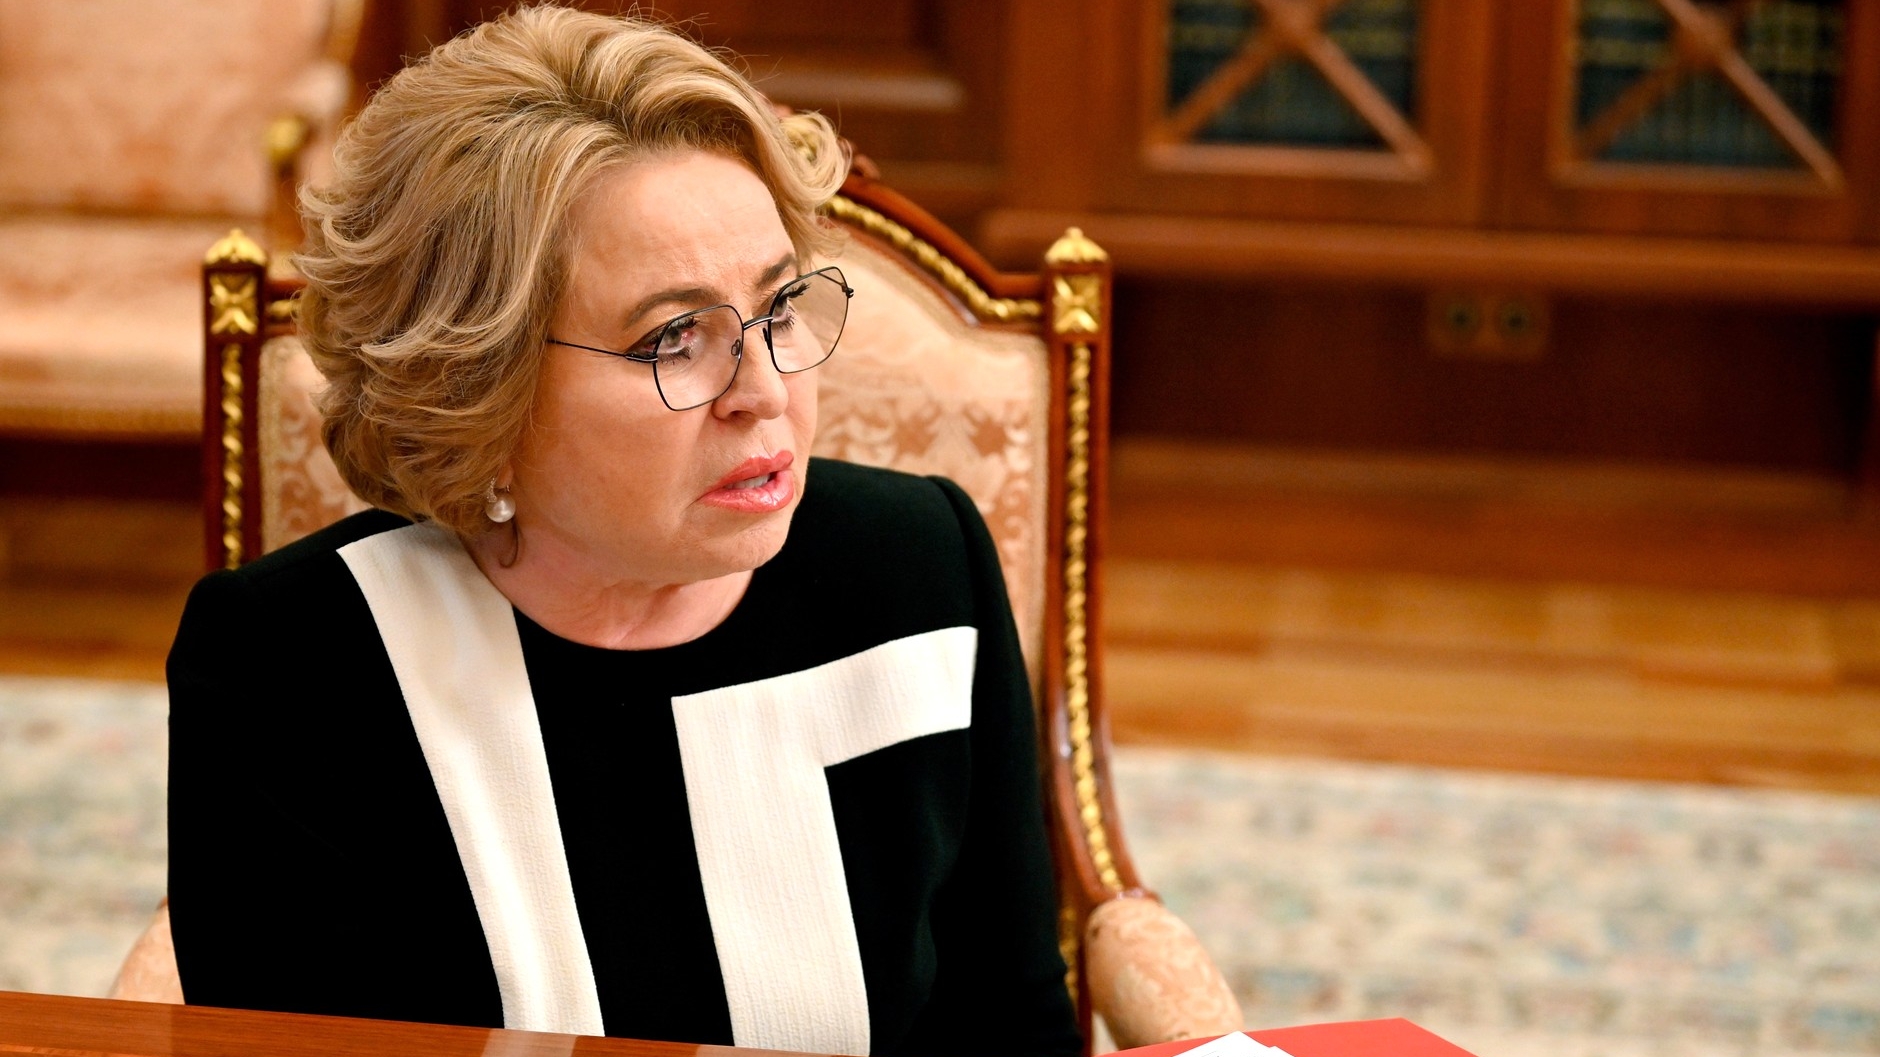 Губернатор Беглов предложил кандидатуру Матвиенко на пост сенатора от Петербурга